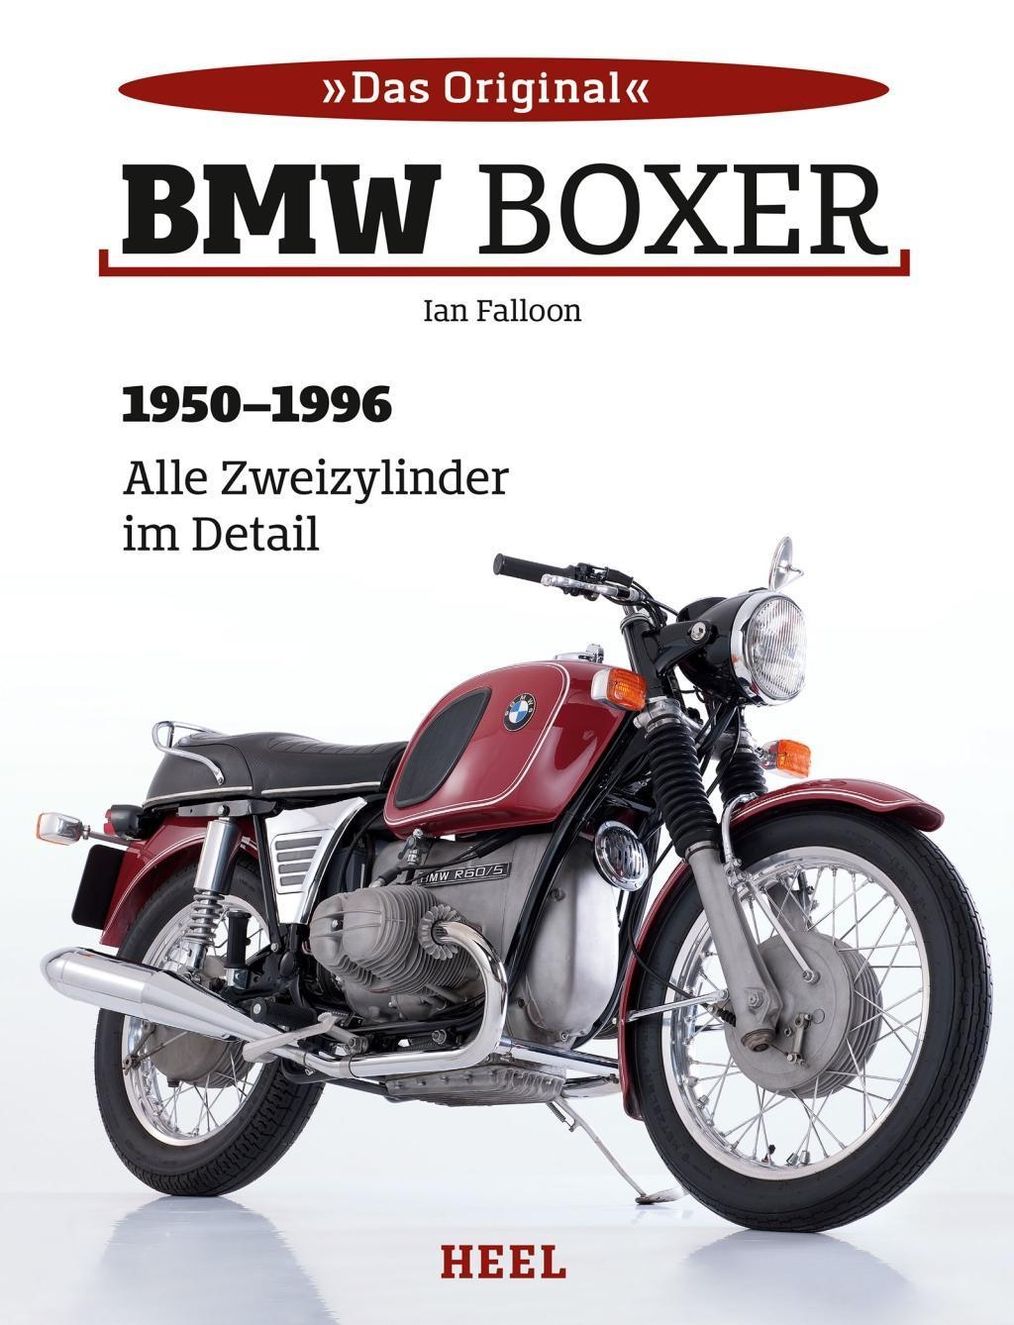 BMW Boxer Buch von Ian Falloon versandkostenfrei bestellen - Weltbild.de